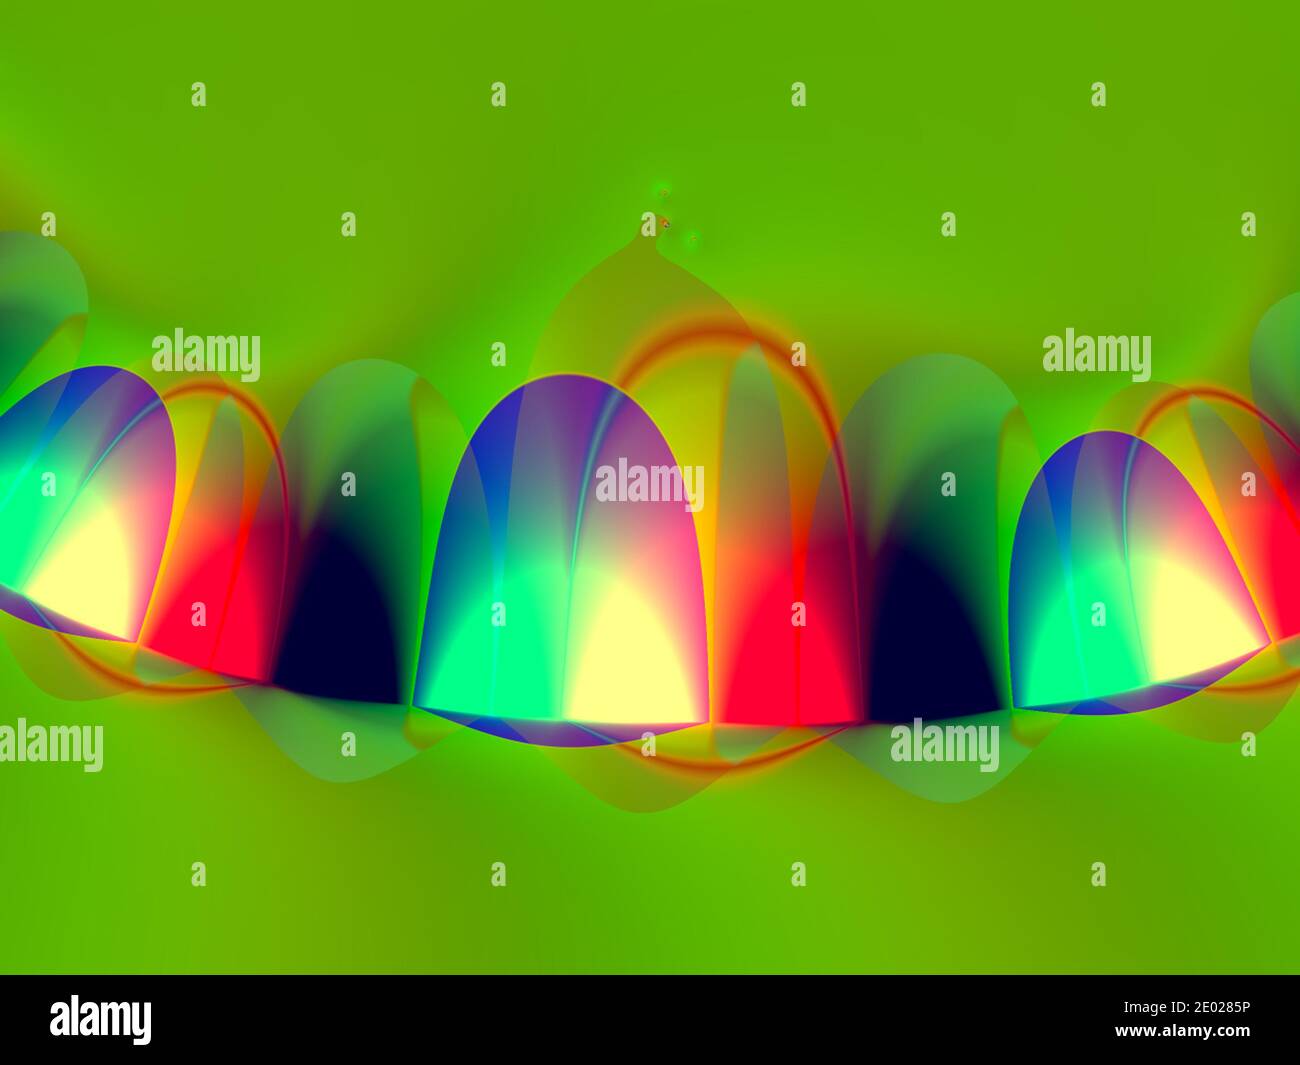 Resumen publicidad multicolores moderno futurista flash horizontal, estructura de fluorescencia de fondo de diseño Foto de stock